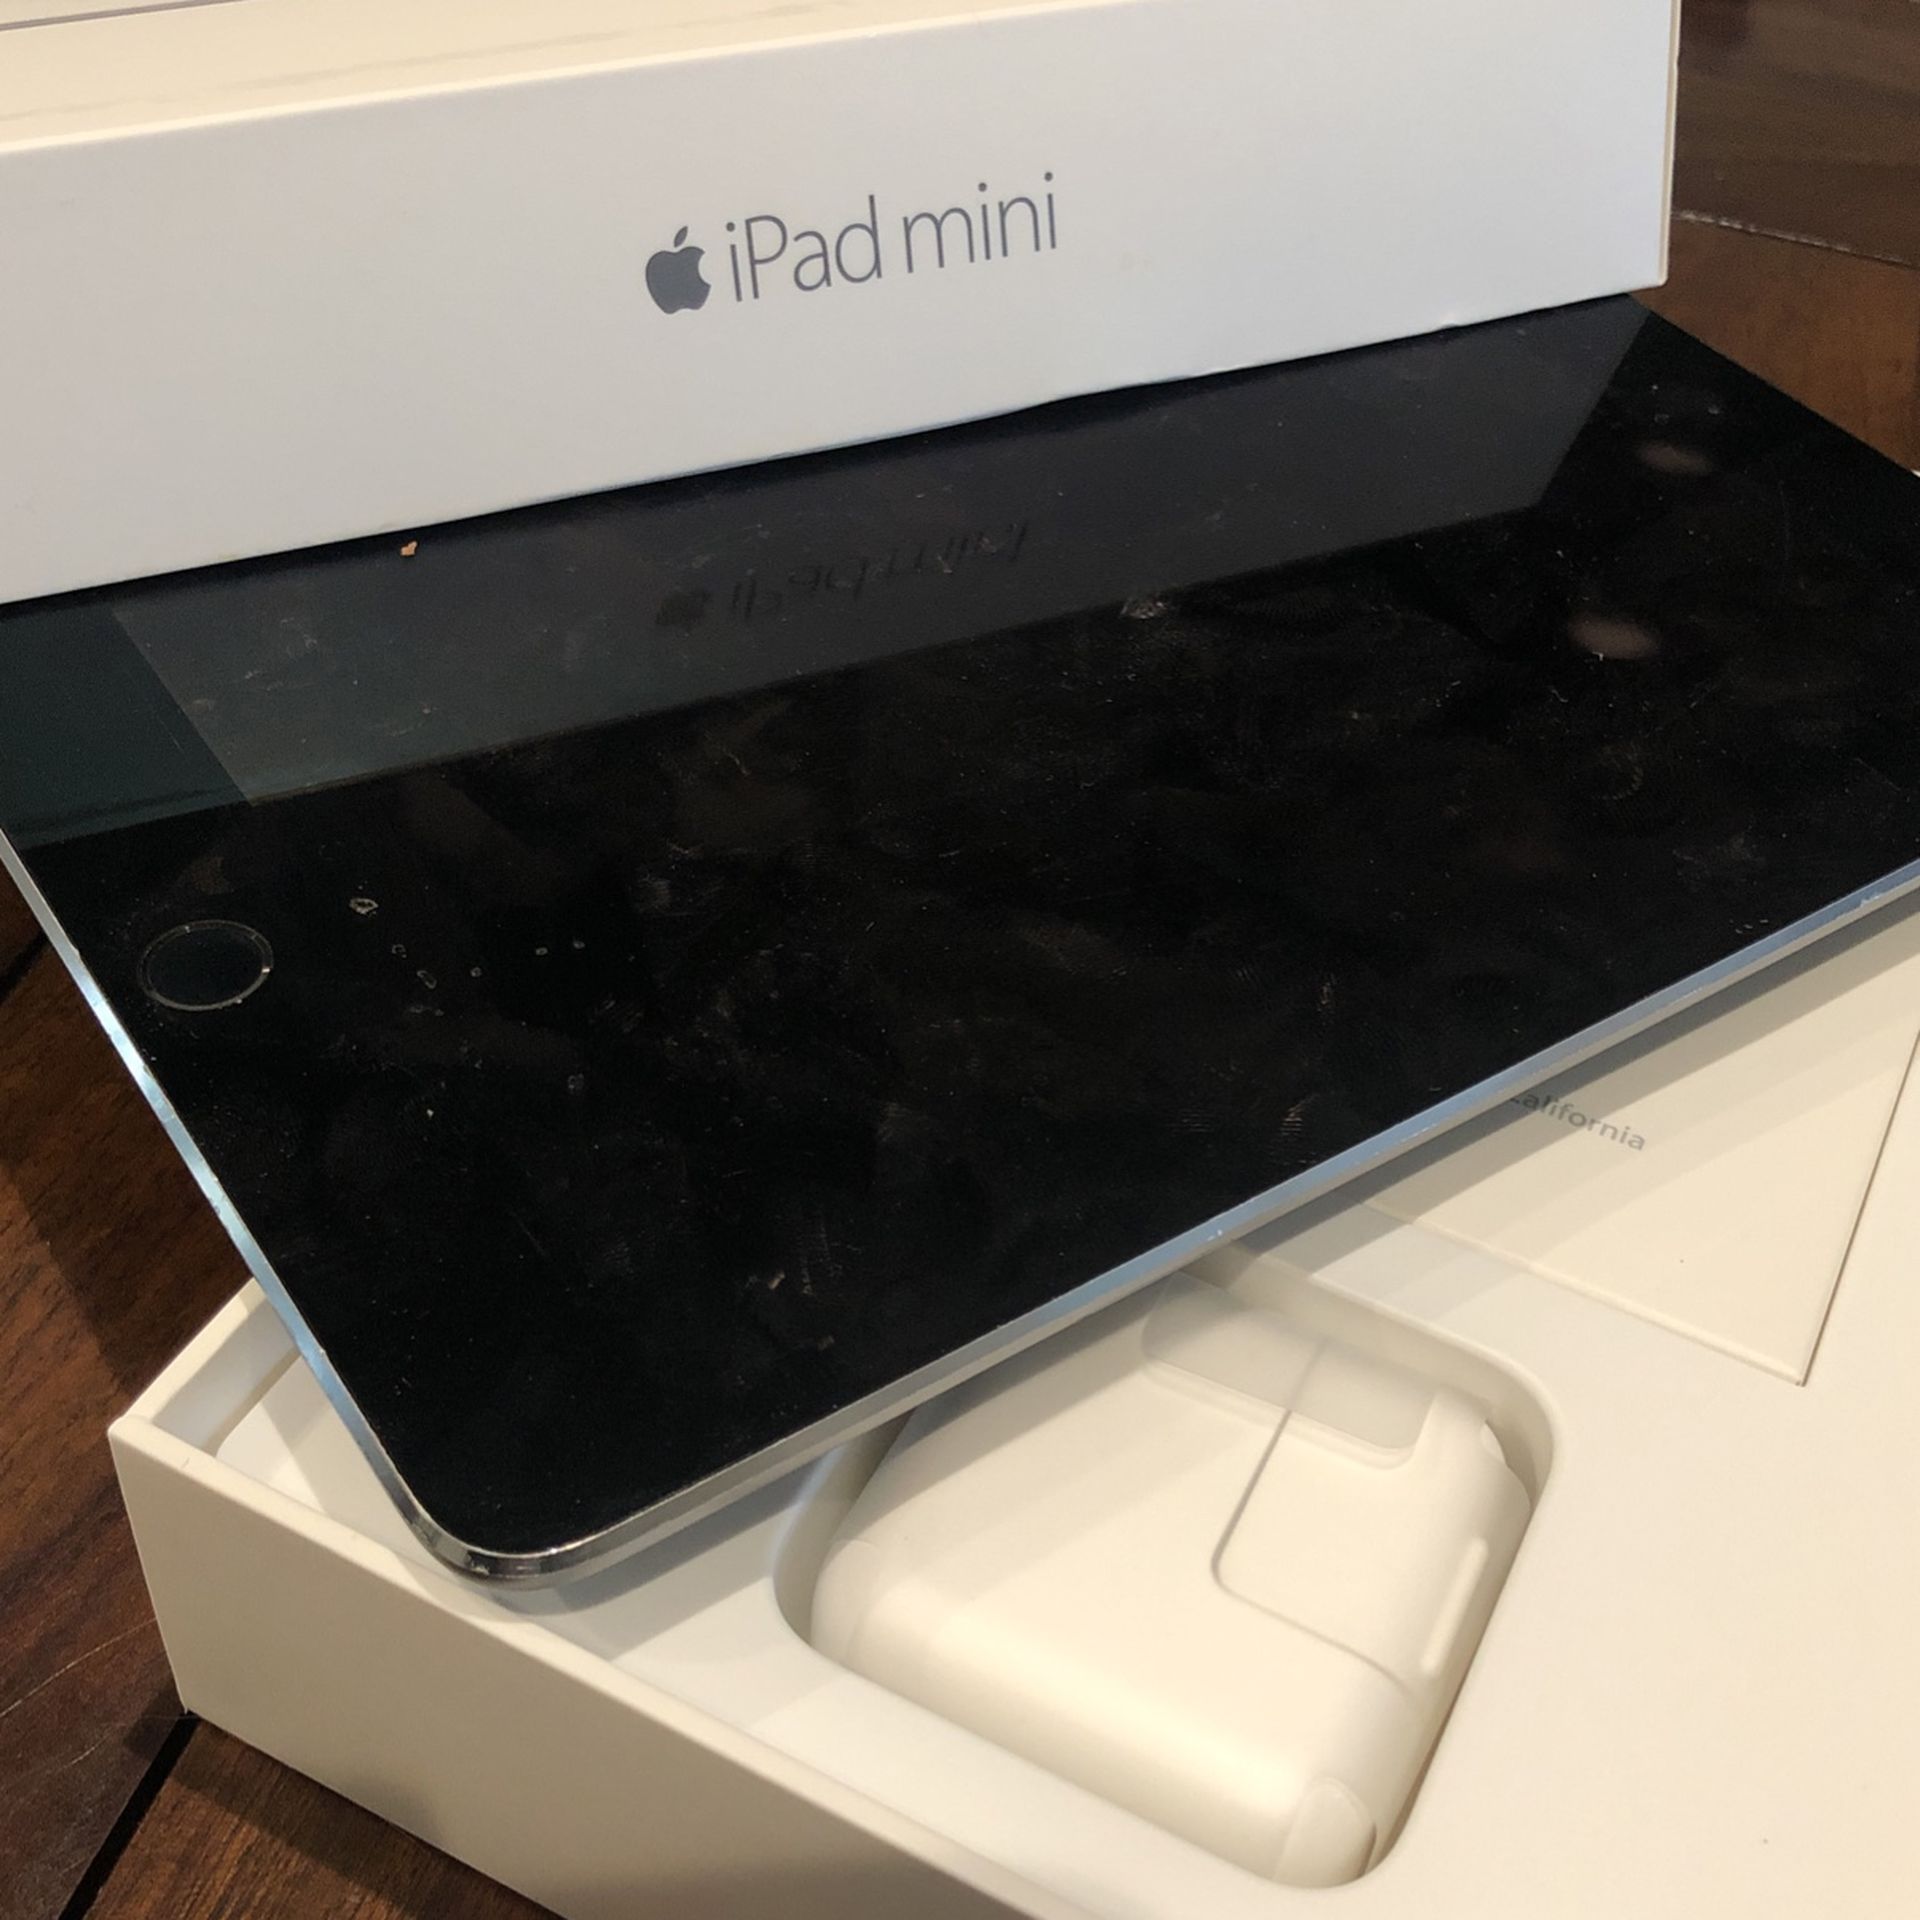 iPad Mini With Box